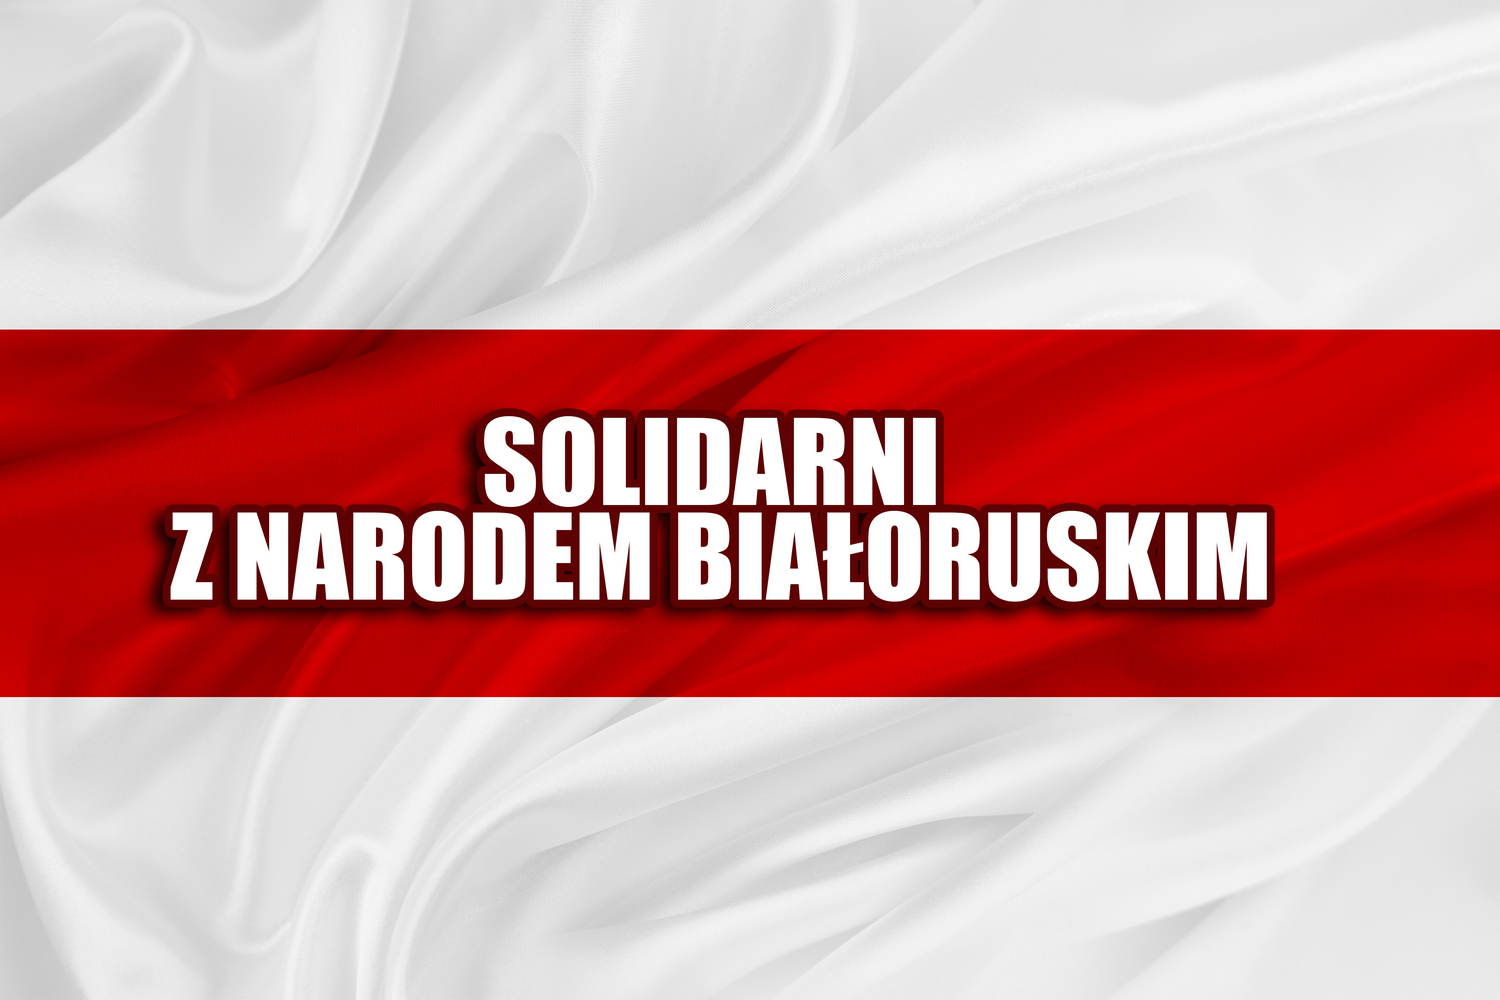 Solidarni z narodem białoruskim, ceniącym niepodległość i demokrację